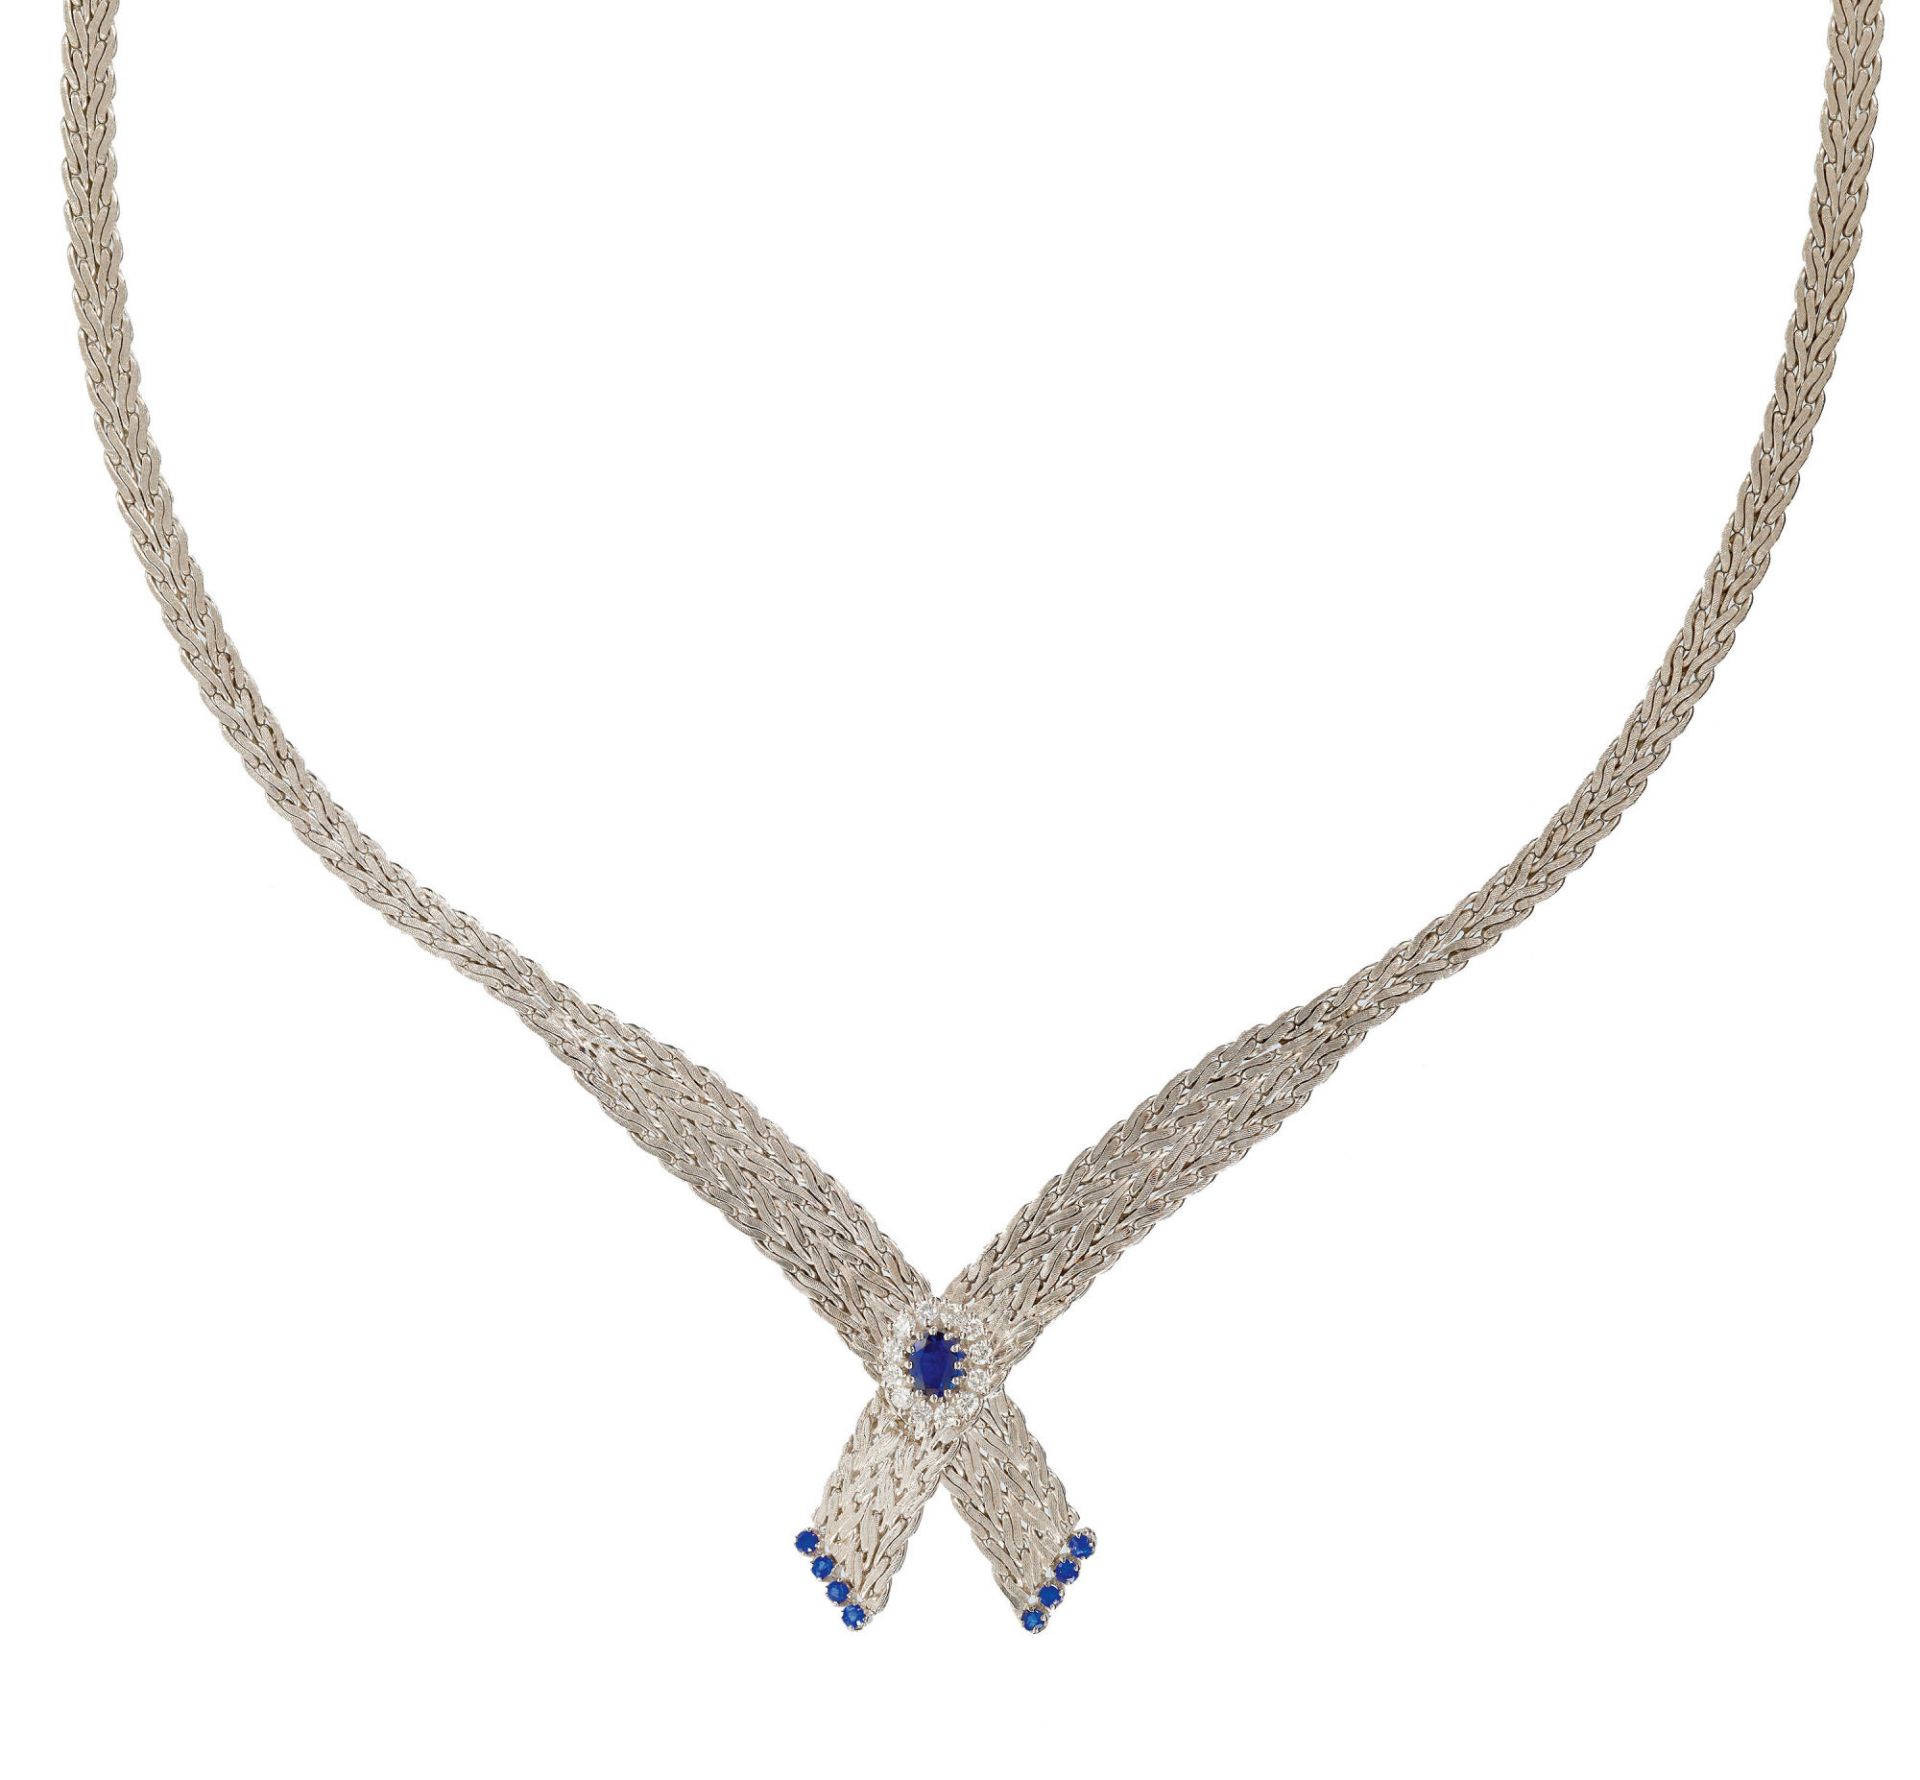 SAPHIR-BRILLANT-COLLIER / Sapphire-diamond-necklace  - Bild 2 aus 2